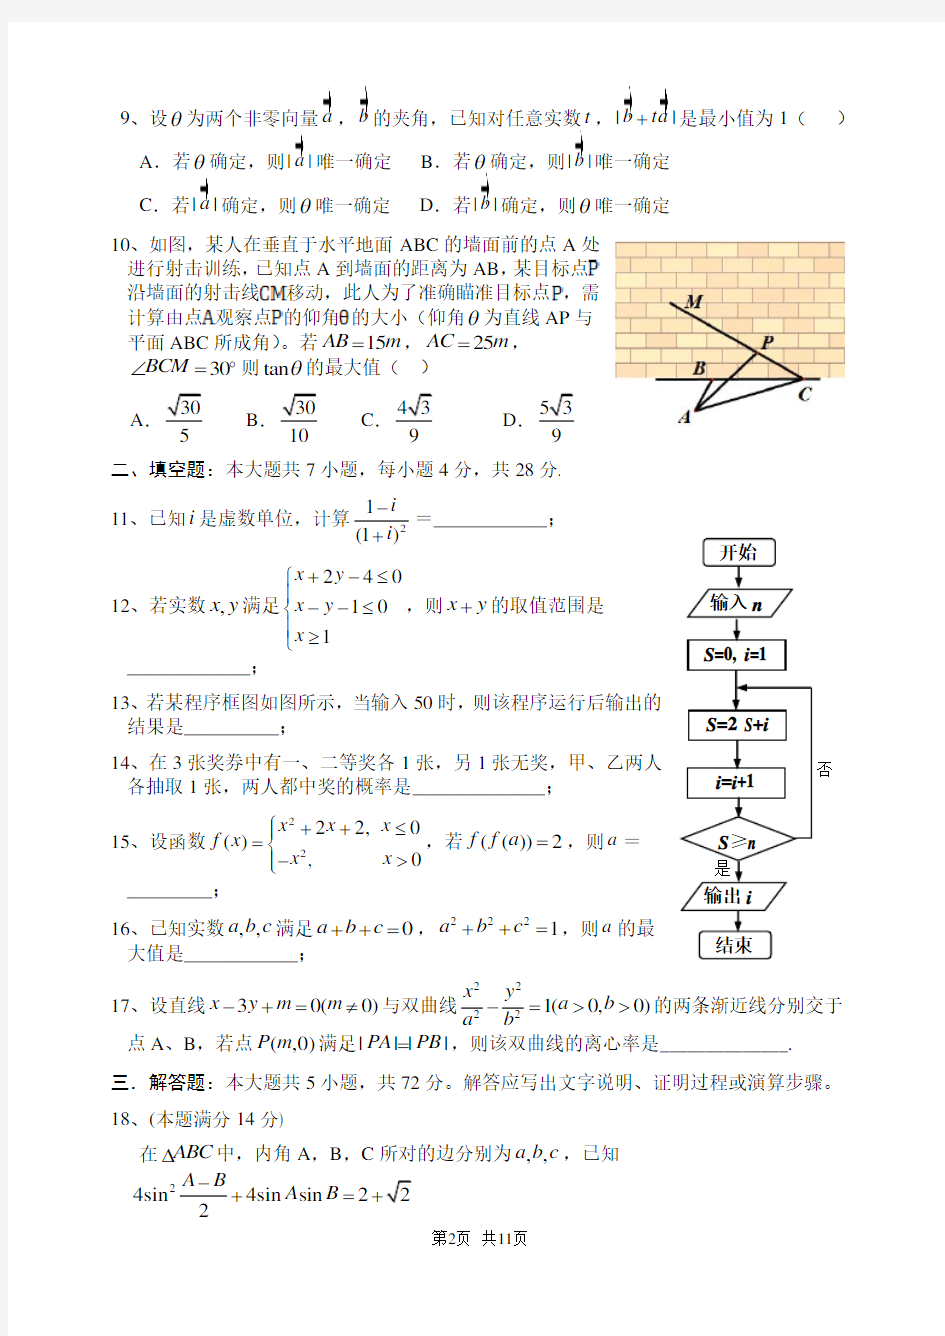 2014年高考浙江文科数学试题及答案(精校版)